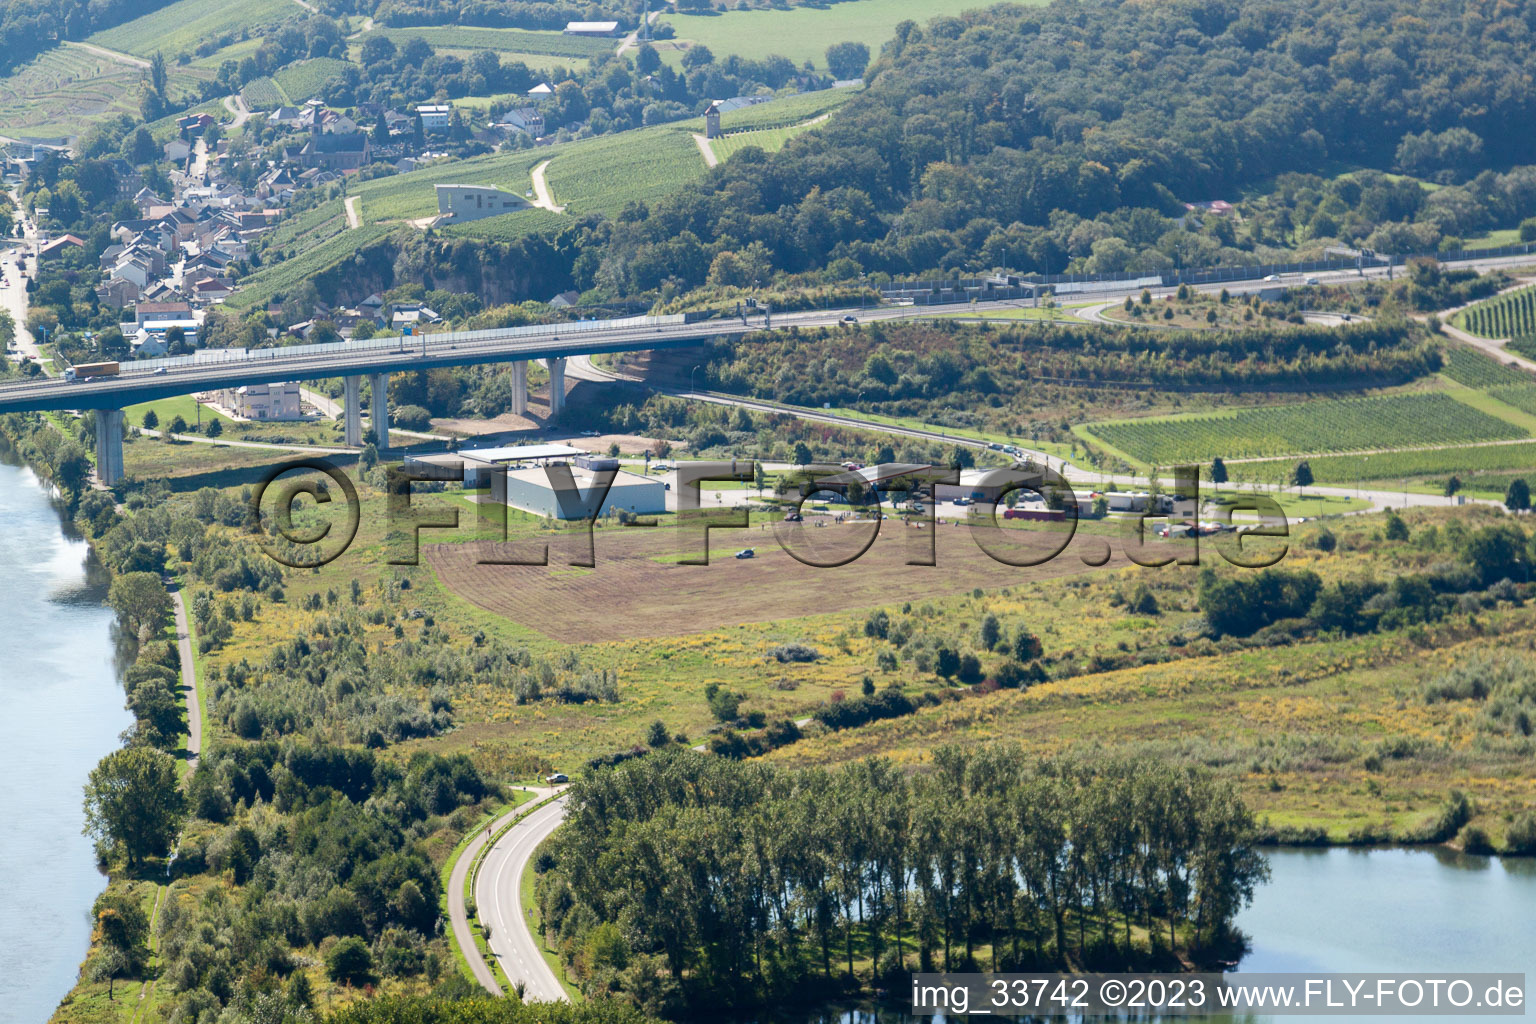 Luftbild von Schengen, die Tankstelle im Bundesland Gréiwemaacher, Luxemburg